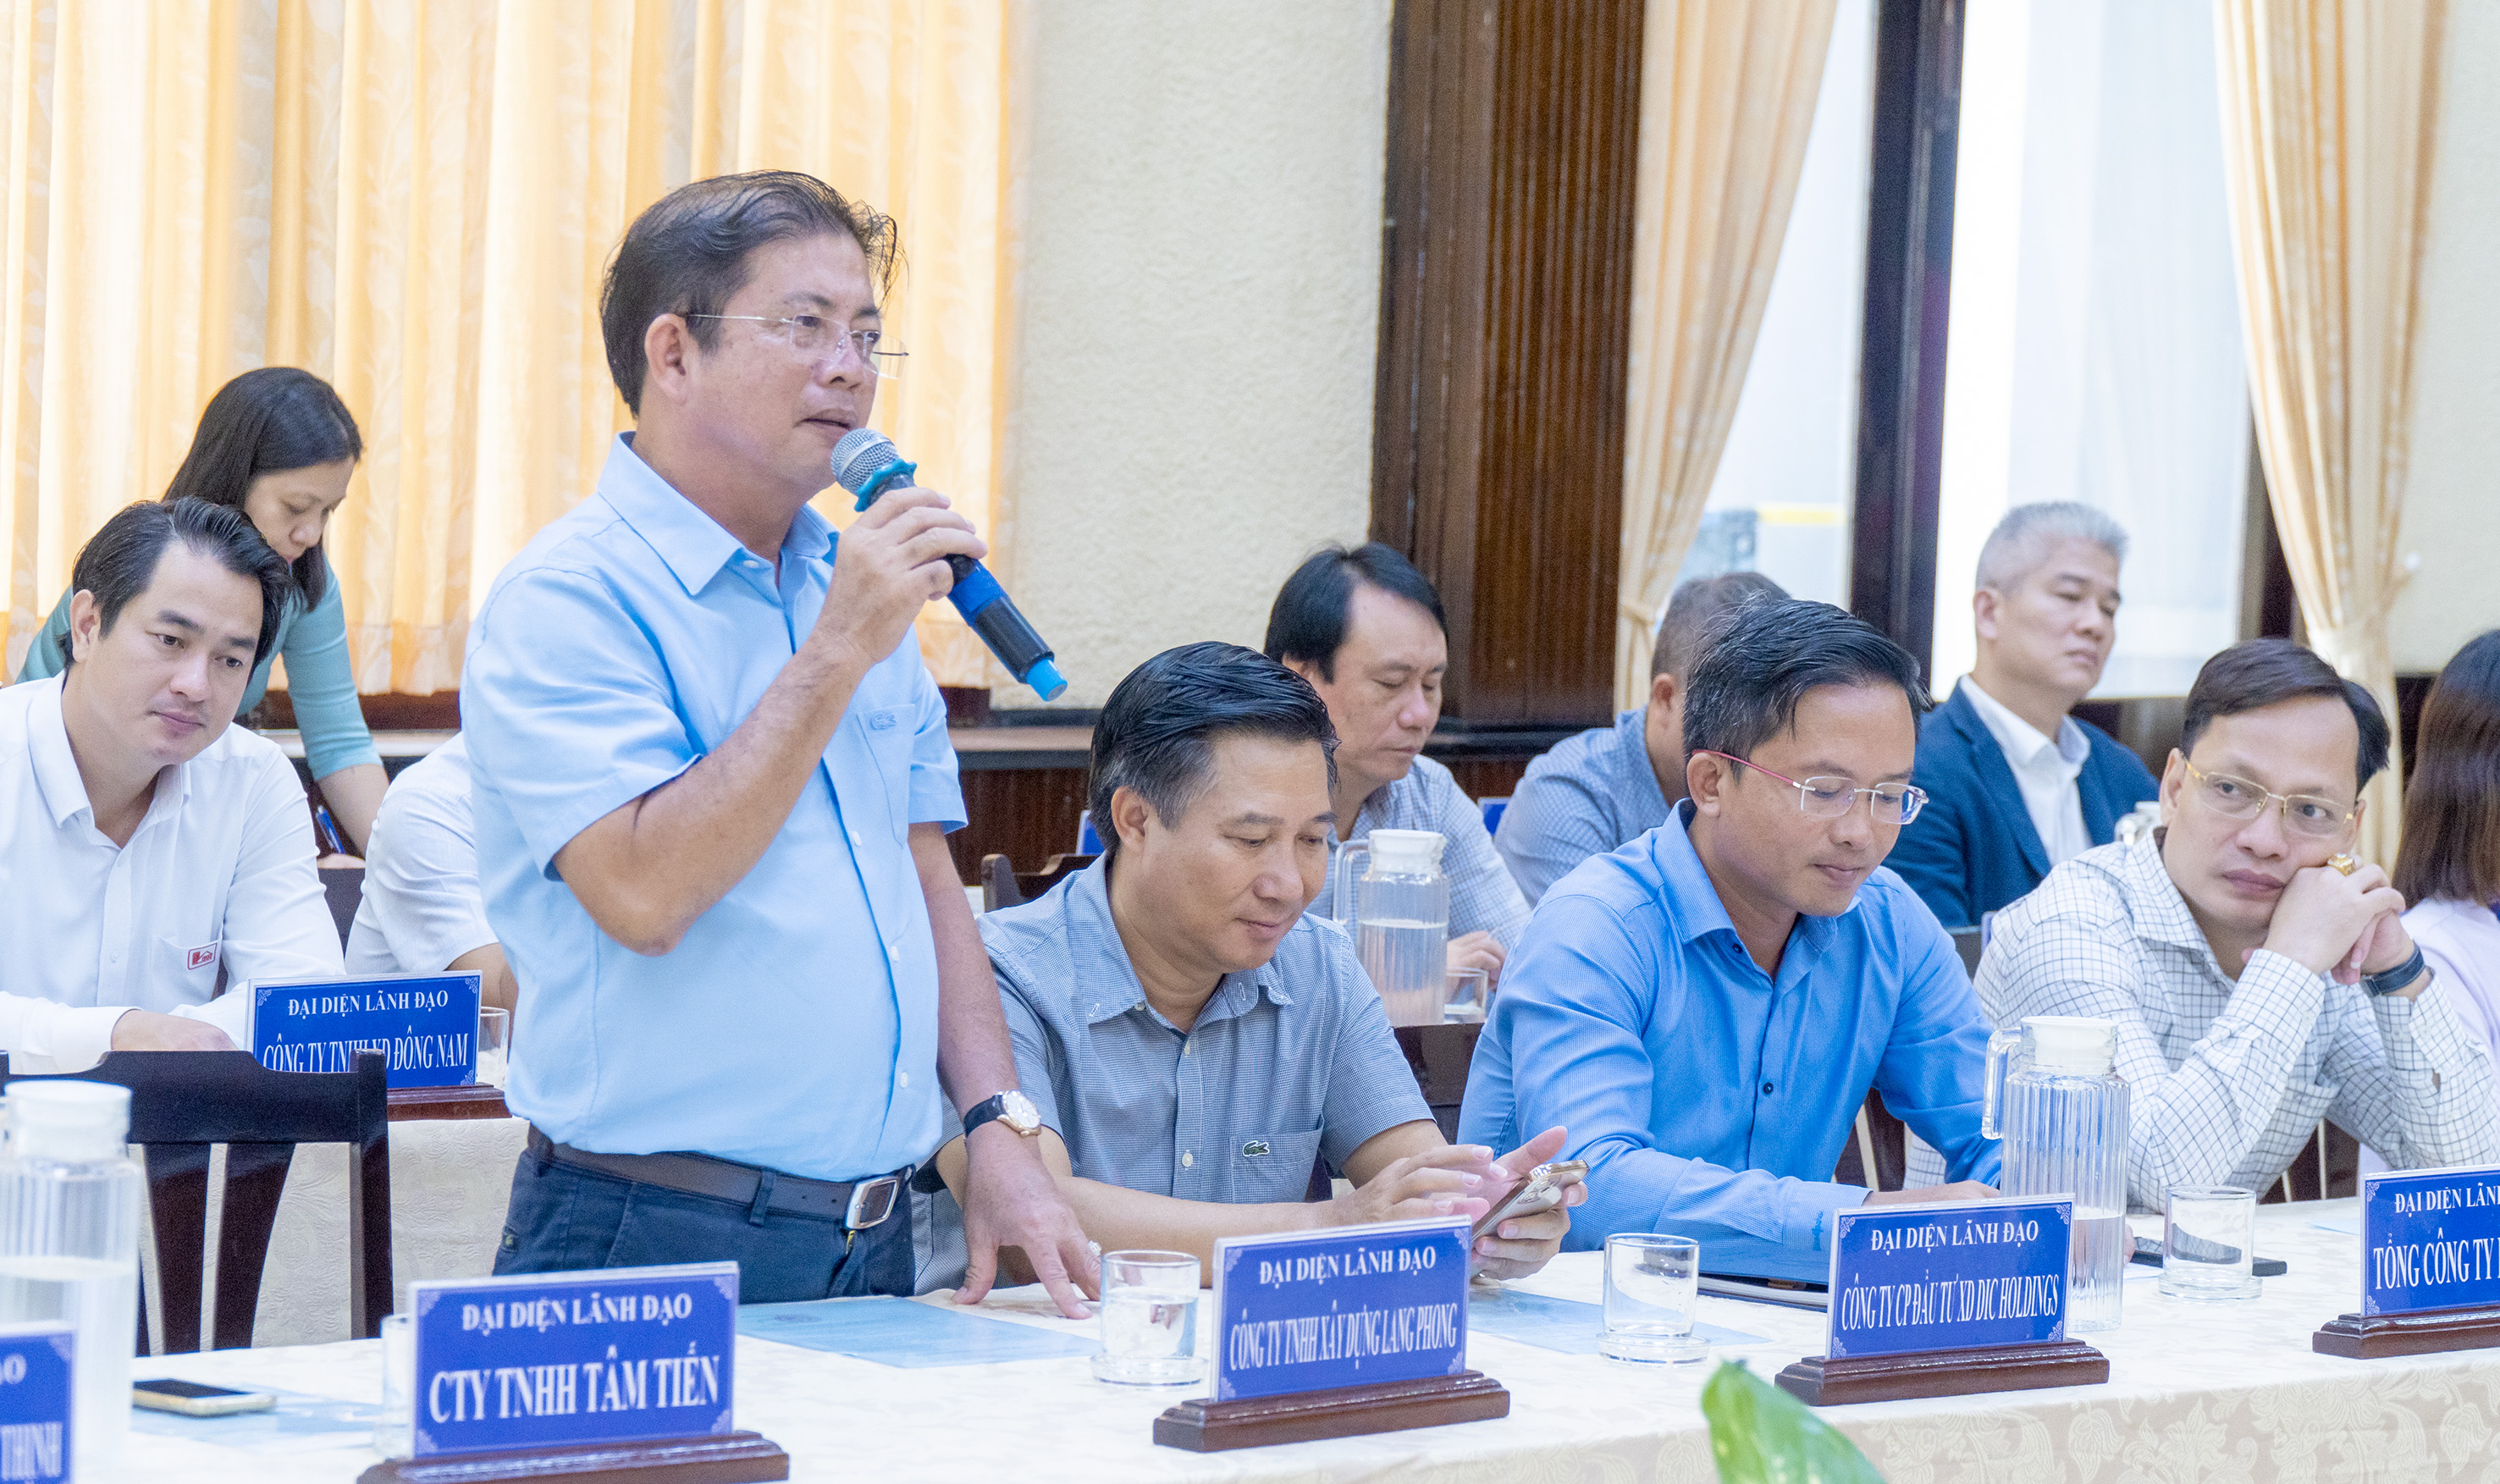 Đại diện Công ty TNHH Lang Phong cam kết đồng hành, hỗ trợ cùng TP. Vũng Tàu 150 triệu đồng để chăm lo cho người nghèo.